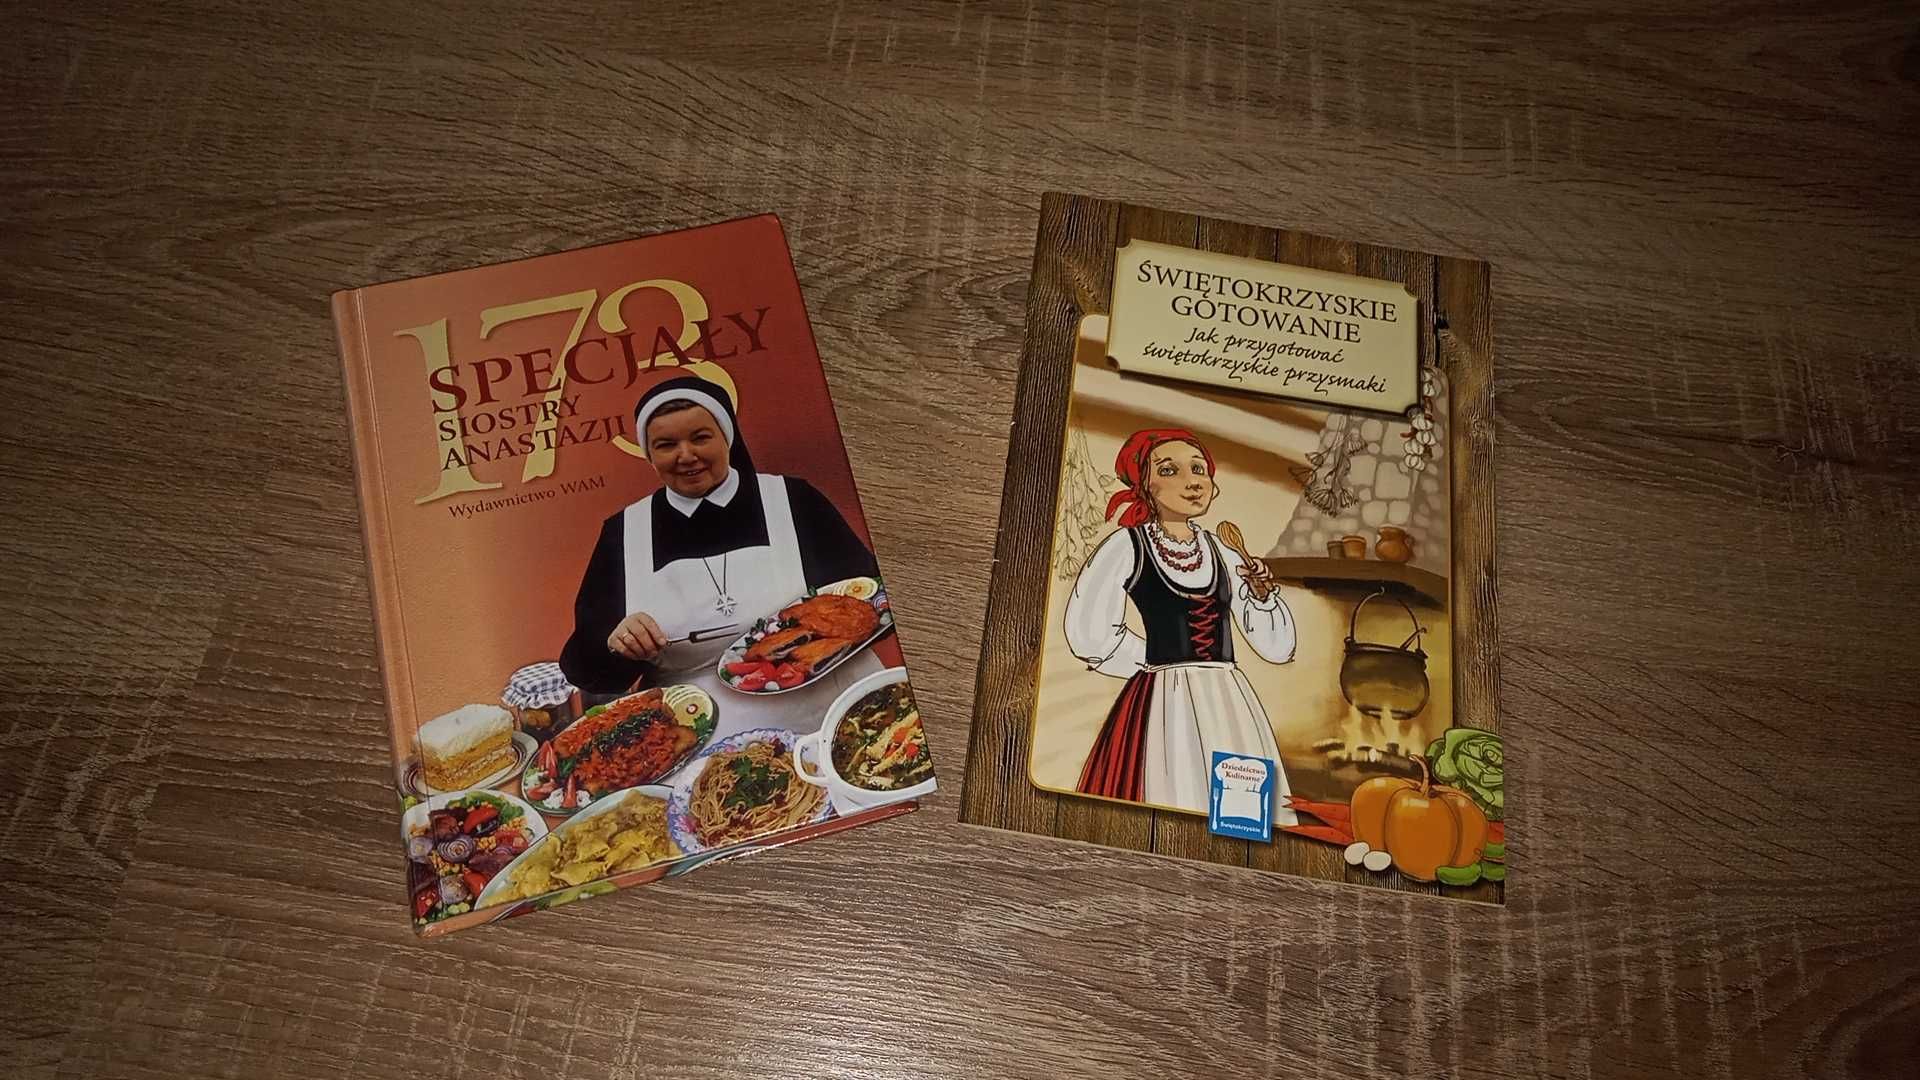 173 specjały siostry Anastazji. Książka kucharska. + gratis